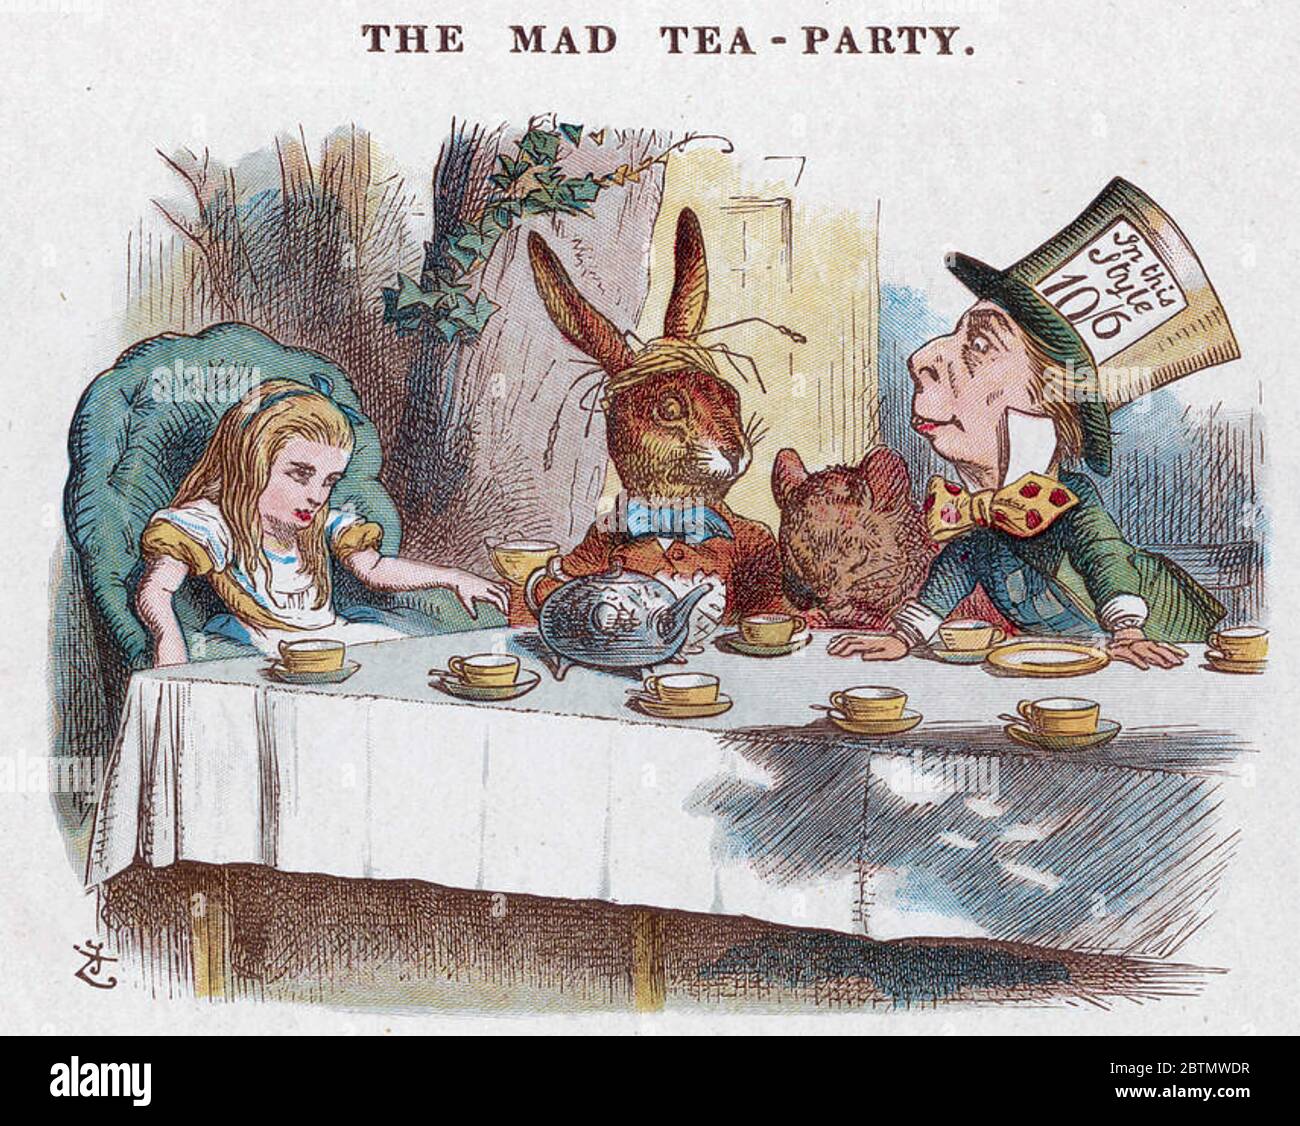 ALICE'S ADVENTURES IN WONDERLAND von Charles Dodgson 1865. Illustration der Mad Tea Party von John Tenniel Stockfoto